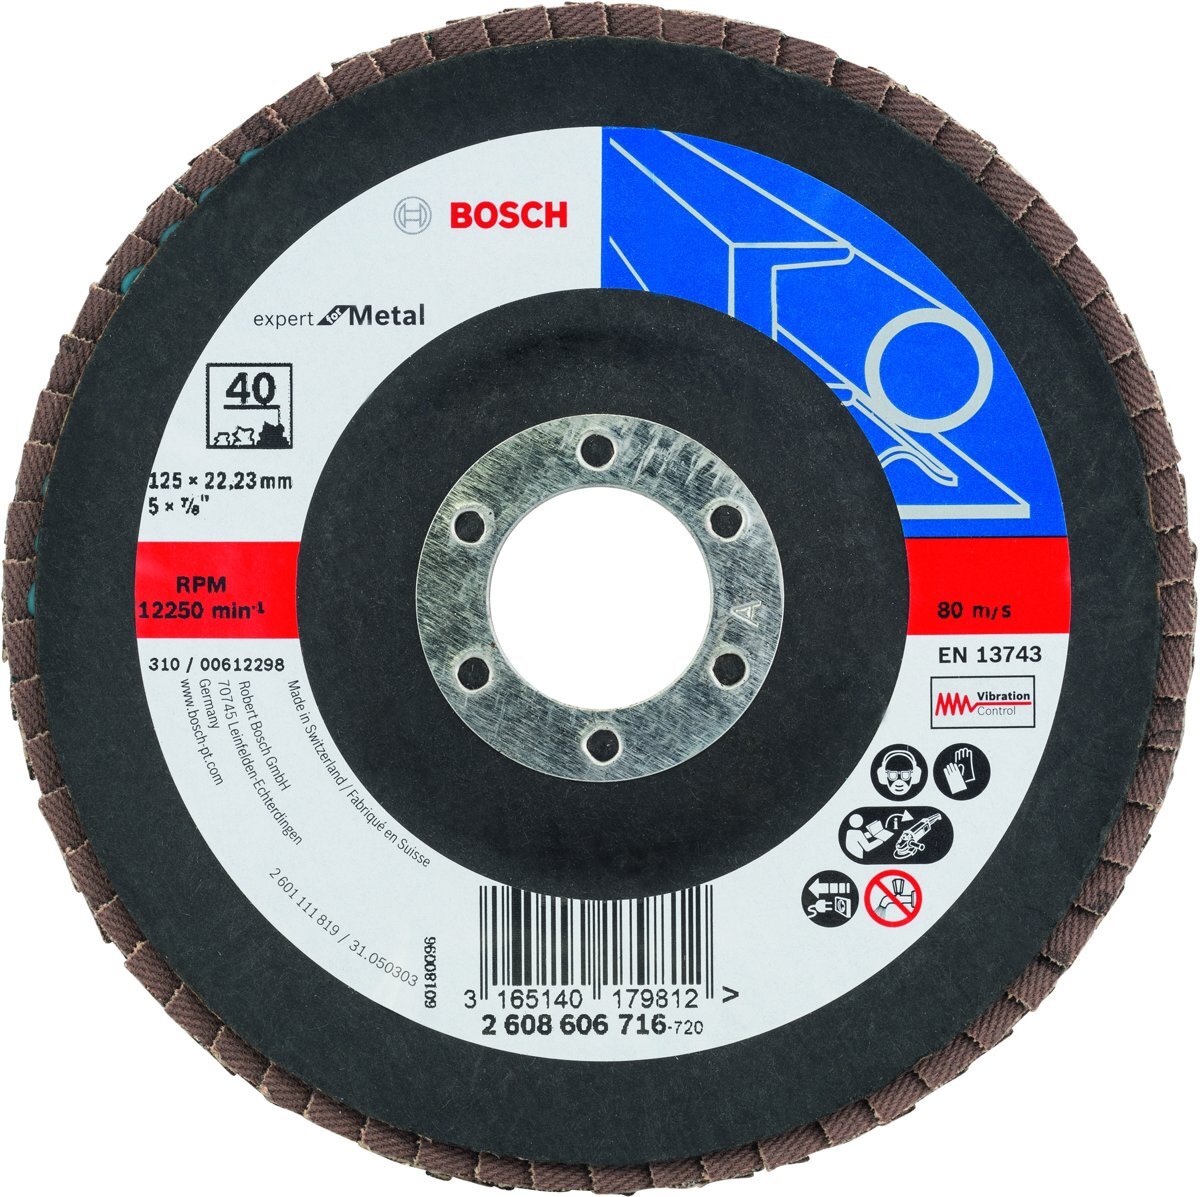 Bosch Bosch - Lamellenschuurschijf 125 mm, 22,23 mm, 40